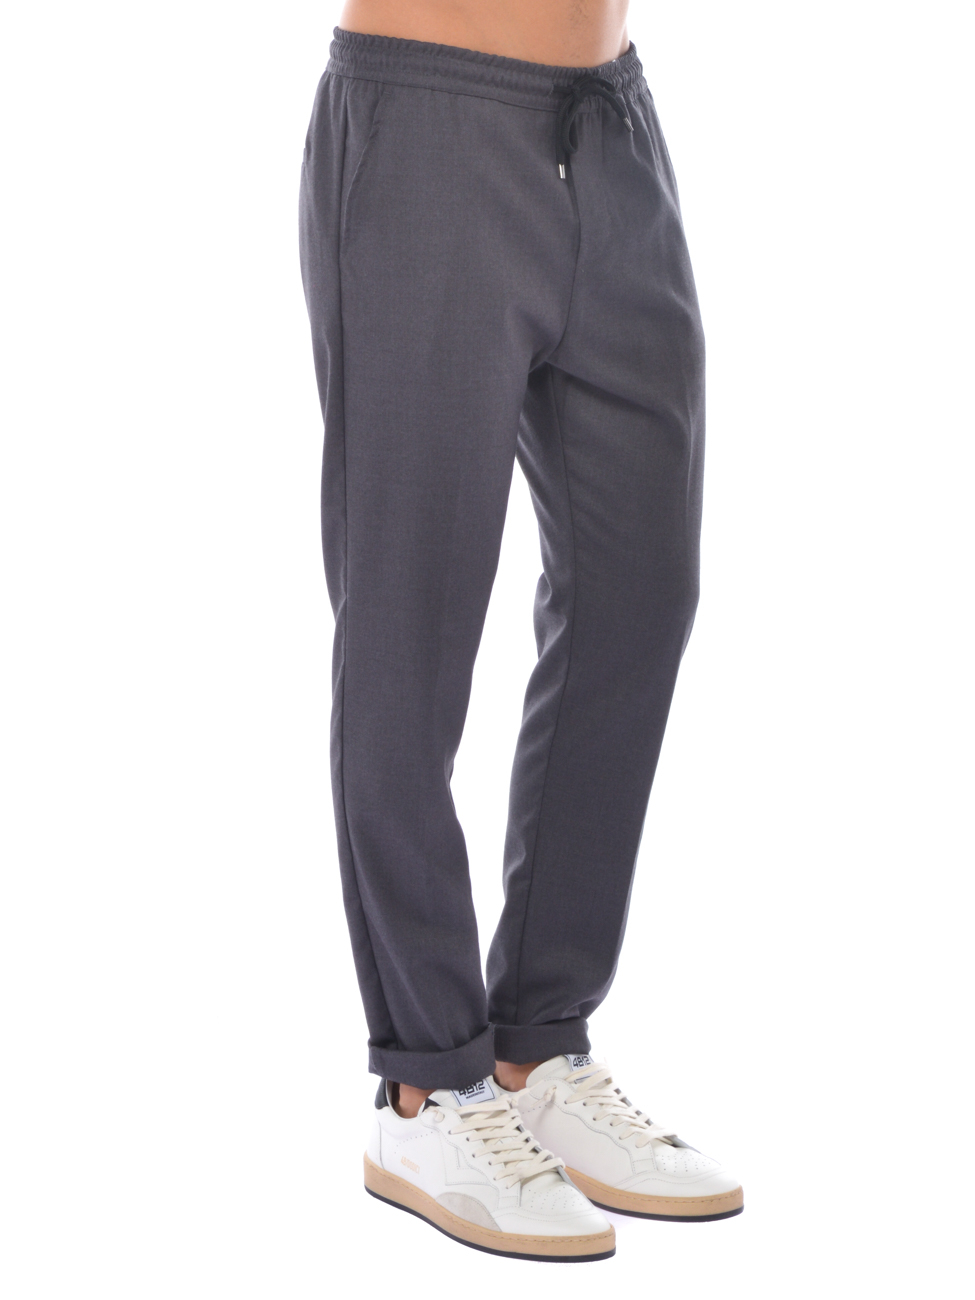 pantalone da uomo Qb24 con elastico e coulisse